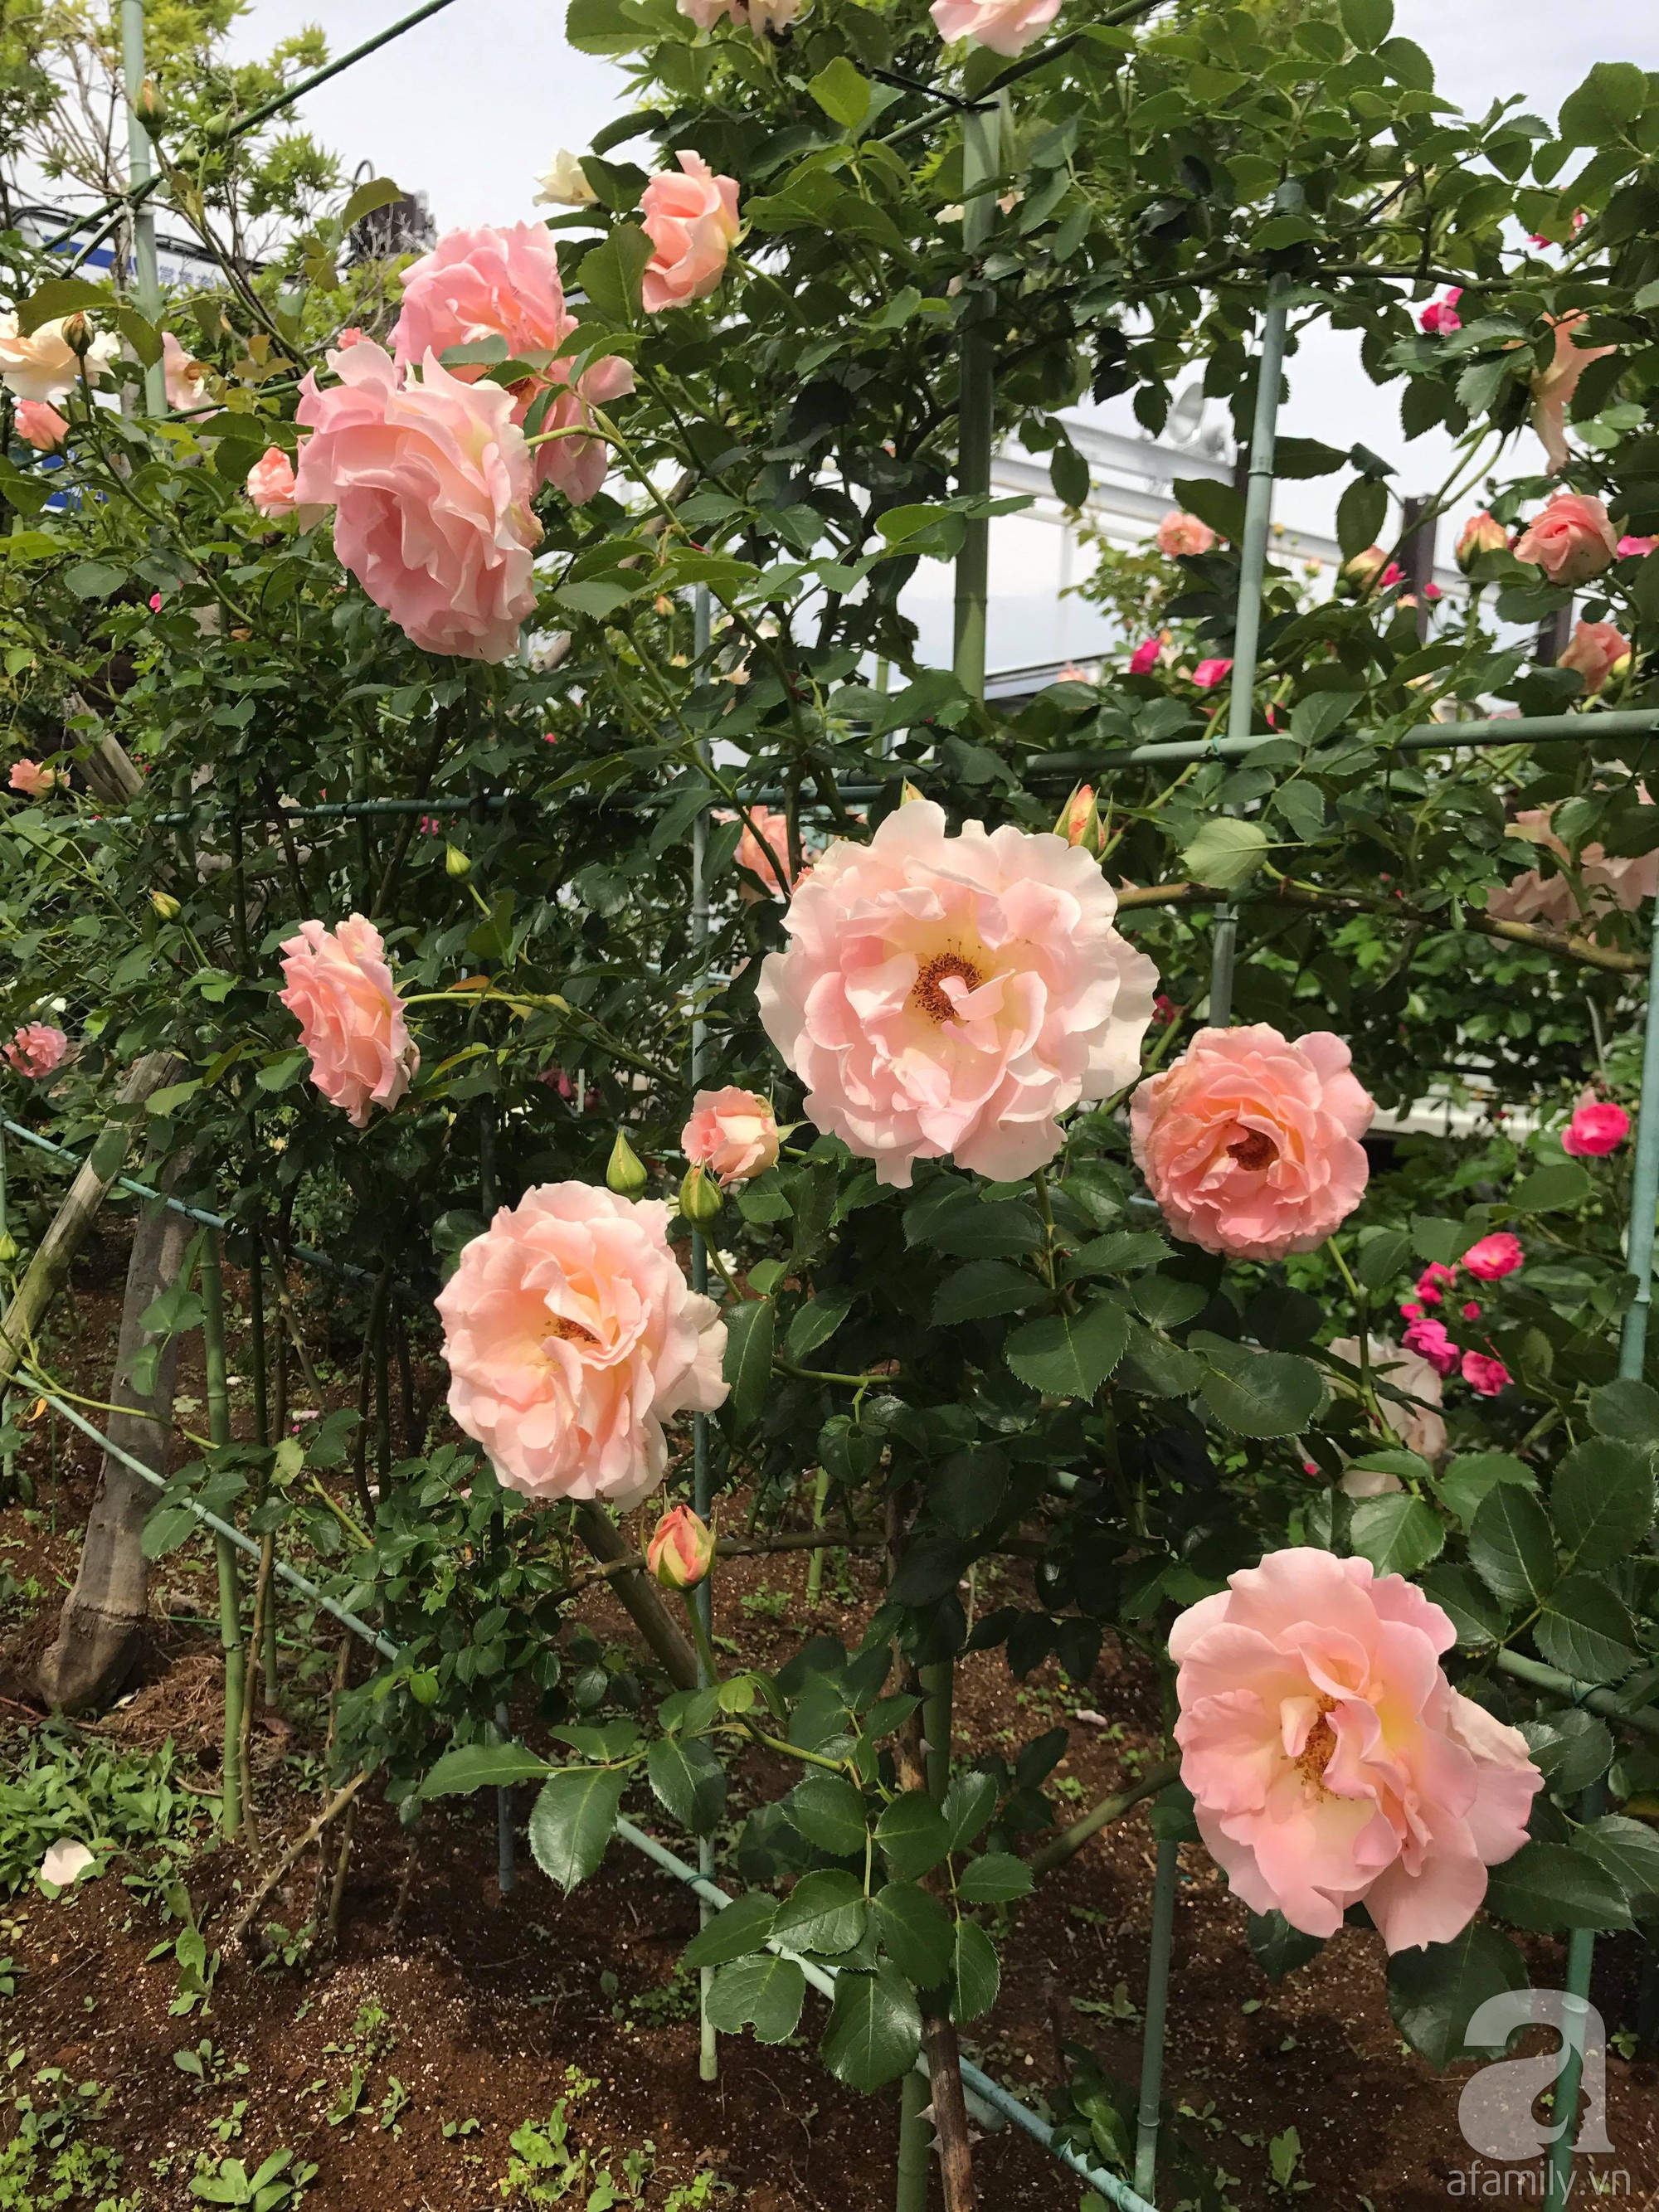 Bức tường hoa hồng đẹp như mơ trong sân vườn vỏn vẹn 6m² của người phụ nữ bỏ ra 5 năm miệt mài chăm sóc - Ảnh 14.